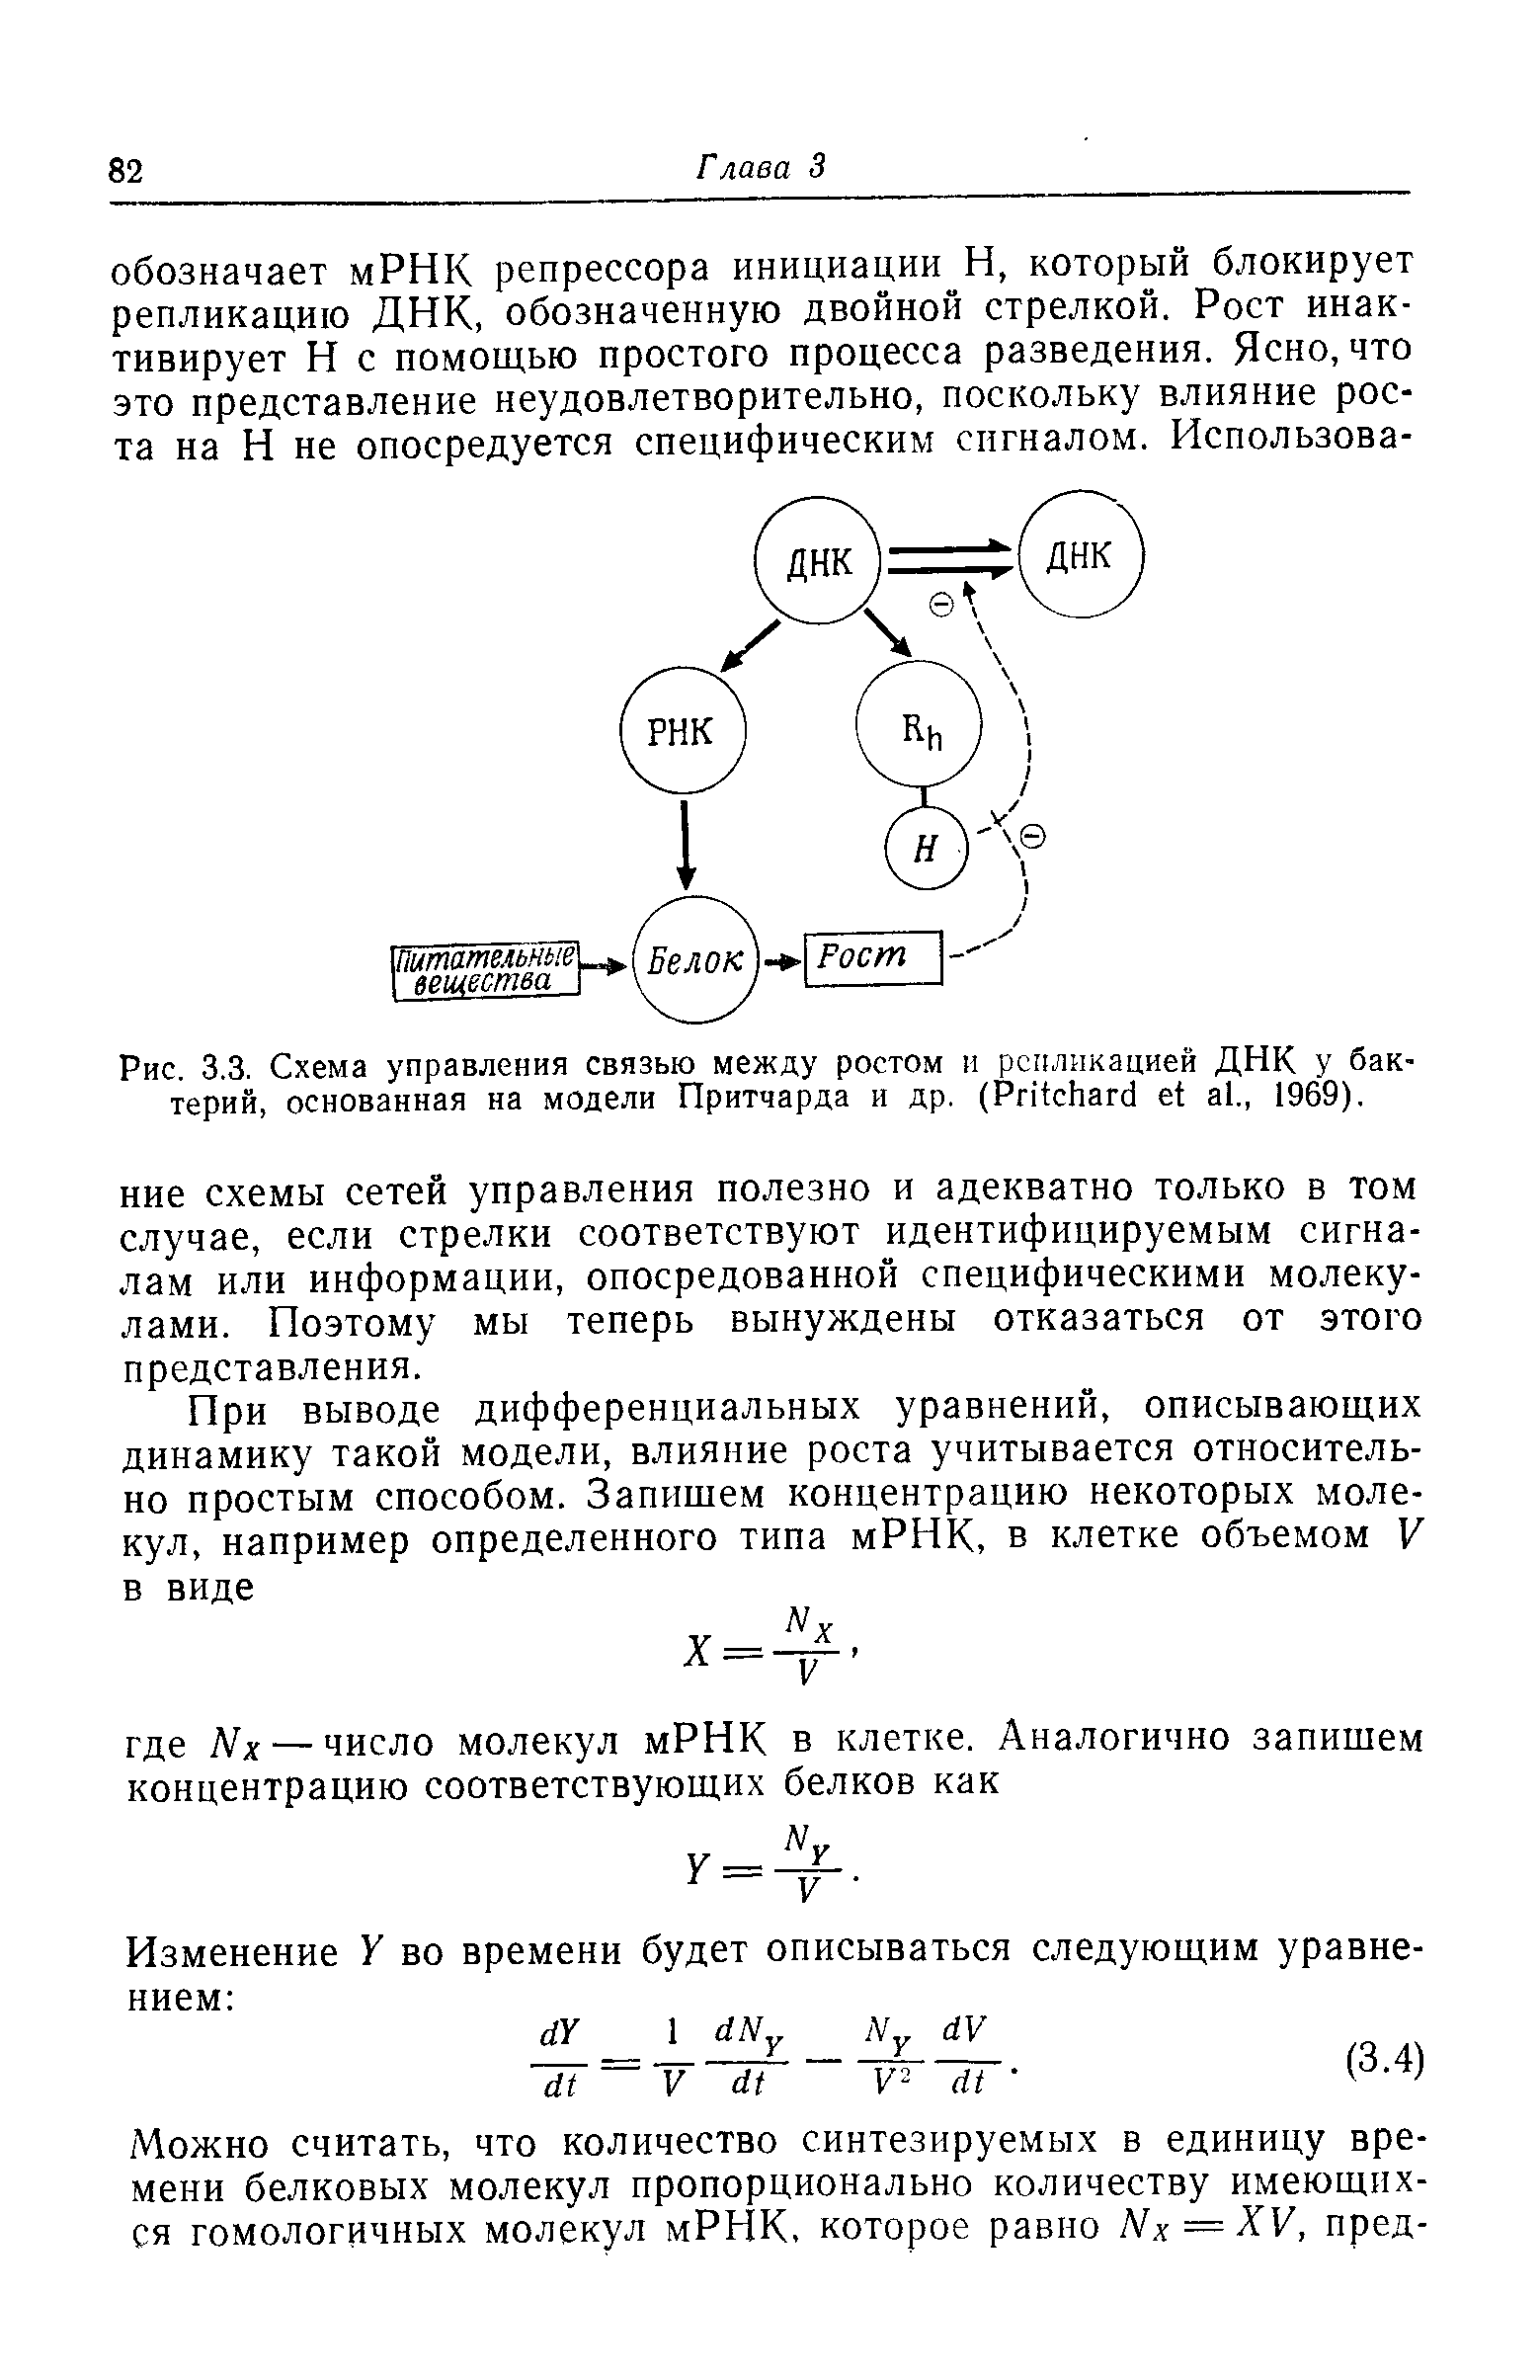 Рис. 3.3. Схема управления связью между ростом и репликацией ДНК у бактерий, основанная на модели Притчарда и др. (P ., 1969).